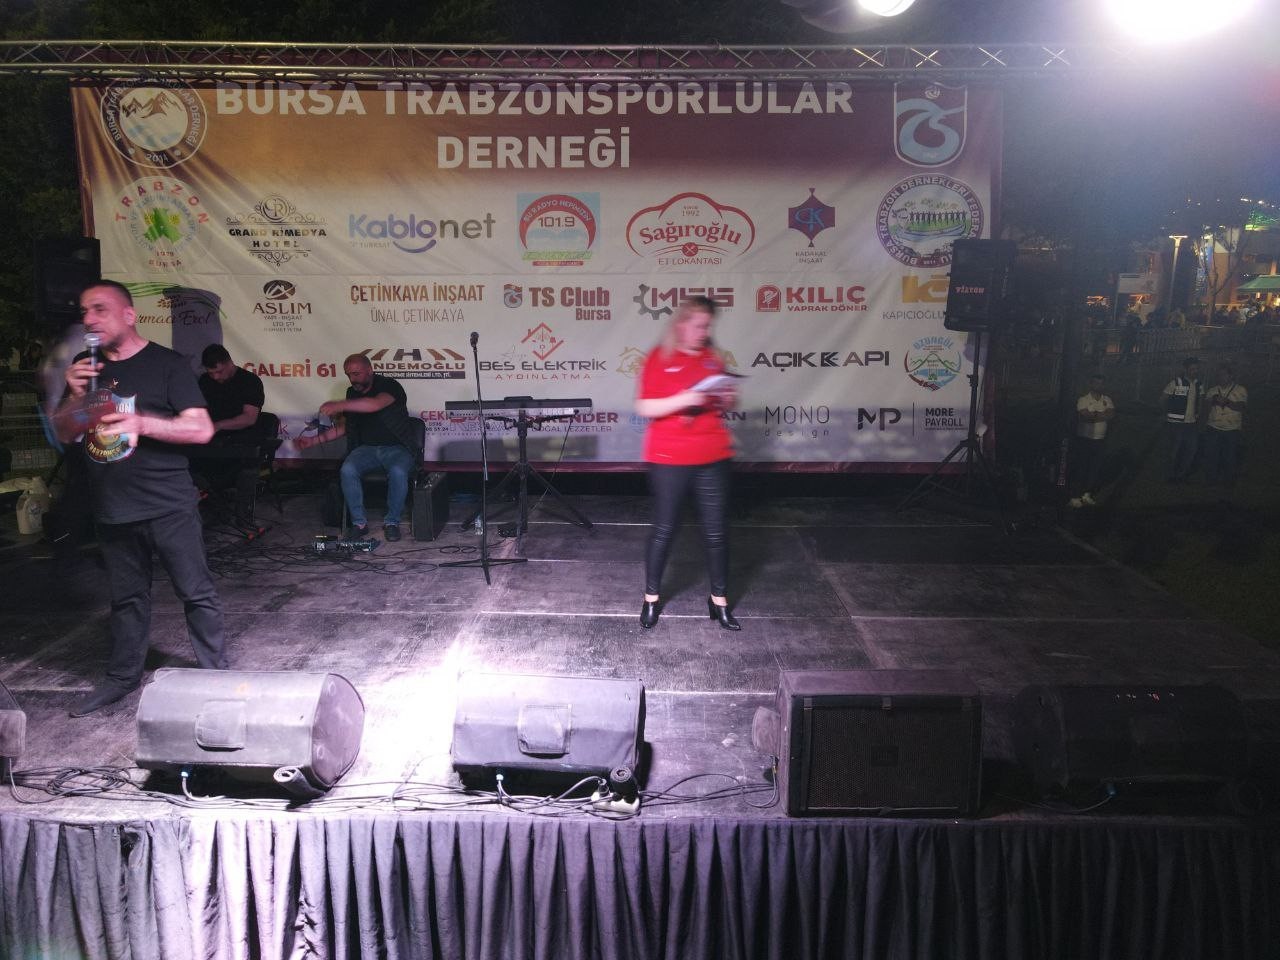 Bursa’da Trabzonsporlular derneği tarafından düzenlenen şampiyonluk kutlamalarına on binlerce kişi katıldı. Kutlamalar havadan dron ile ...